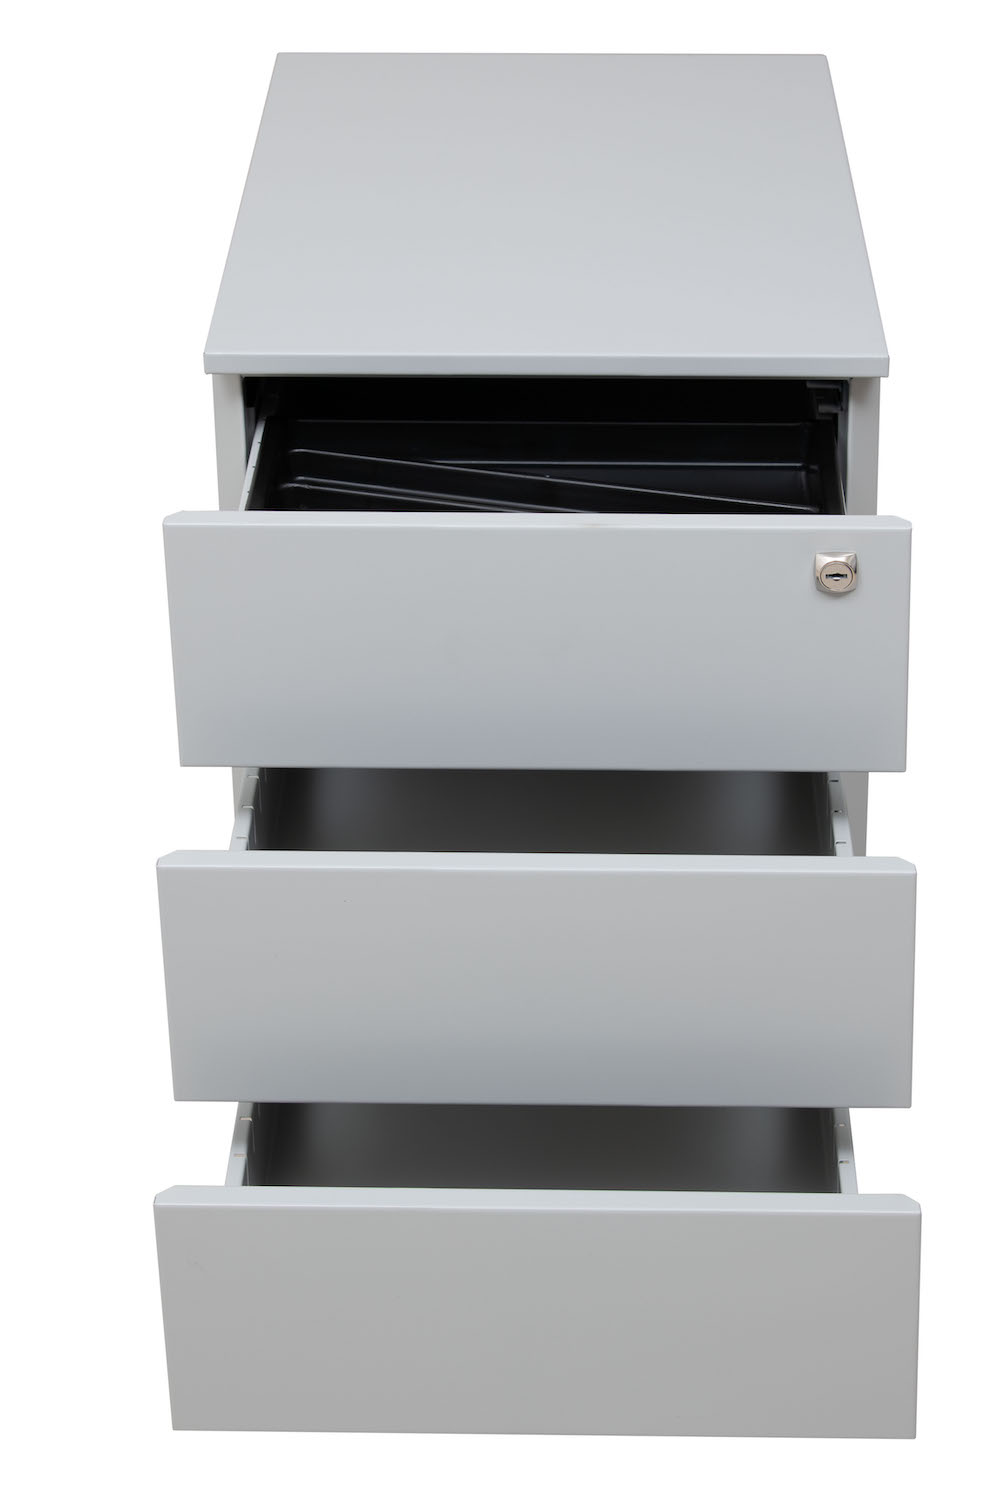 Rollcontainer Horse | 3 Schubladen | Seitengriff + Materialfach | HxBxT 55x39x59 cm | Metalldeckplatte | Grau